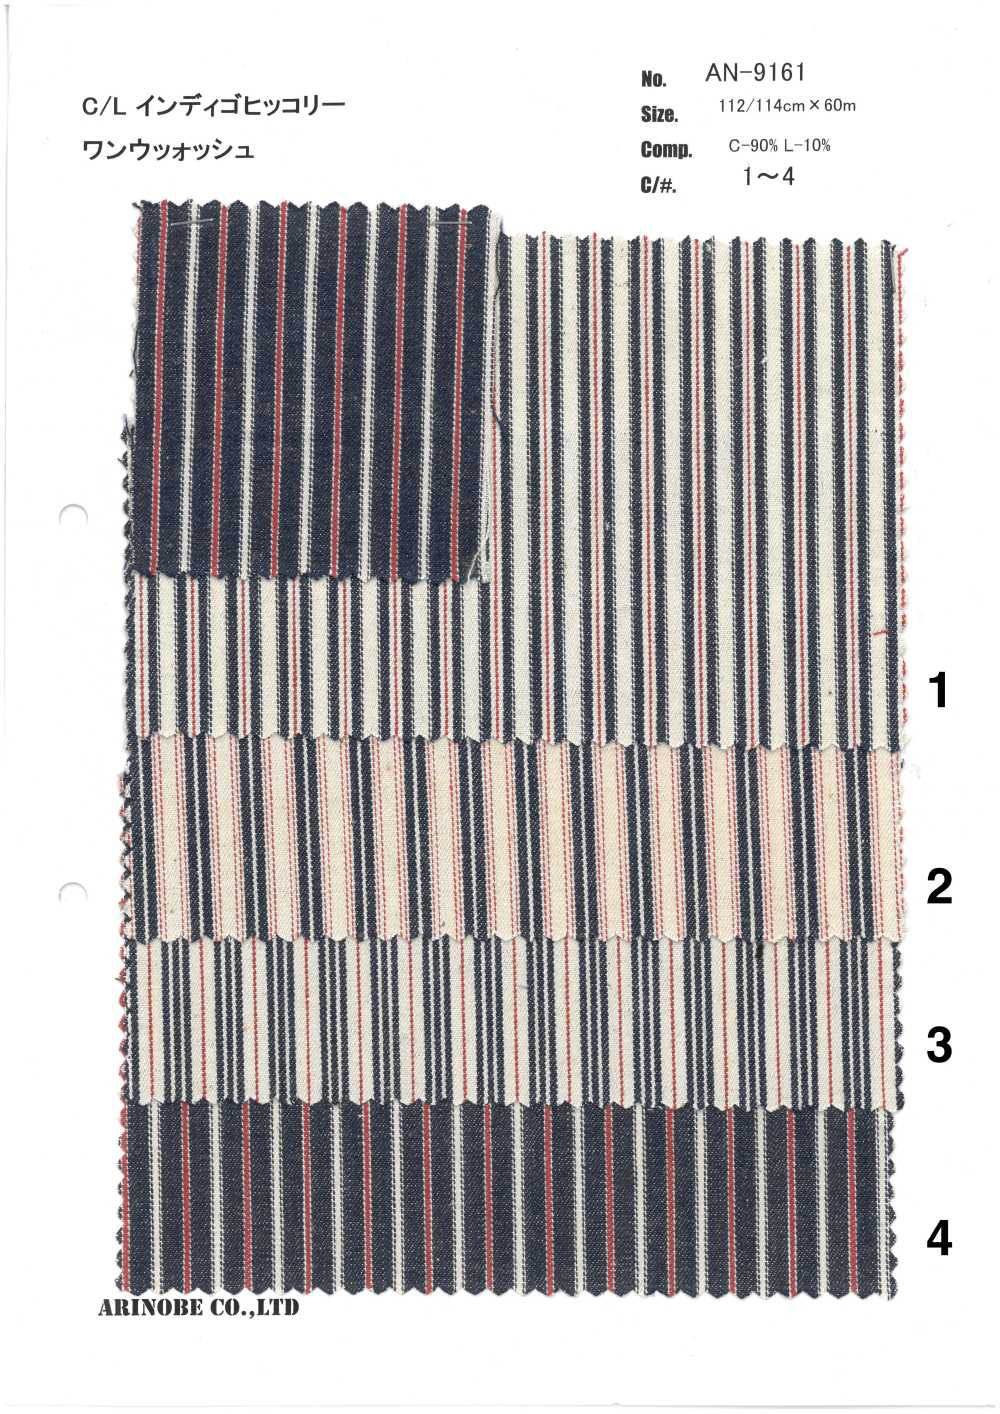 AN-9161 Linen Indigo Hickory[Textile / Fabric] ARINOBE CO., LTD.